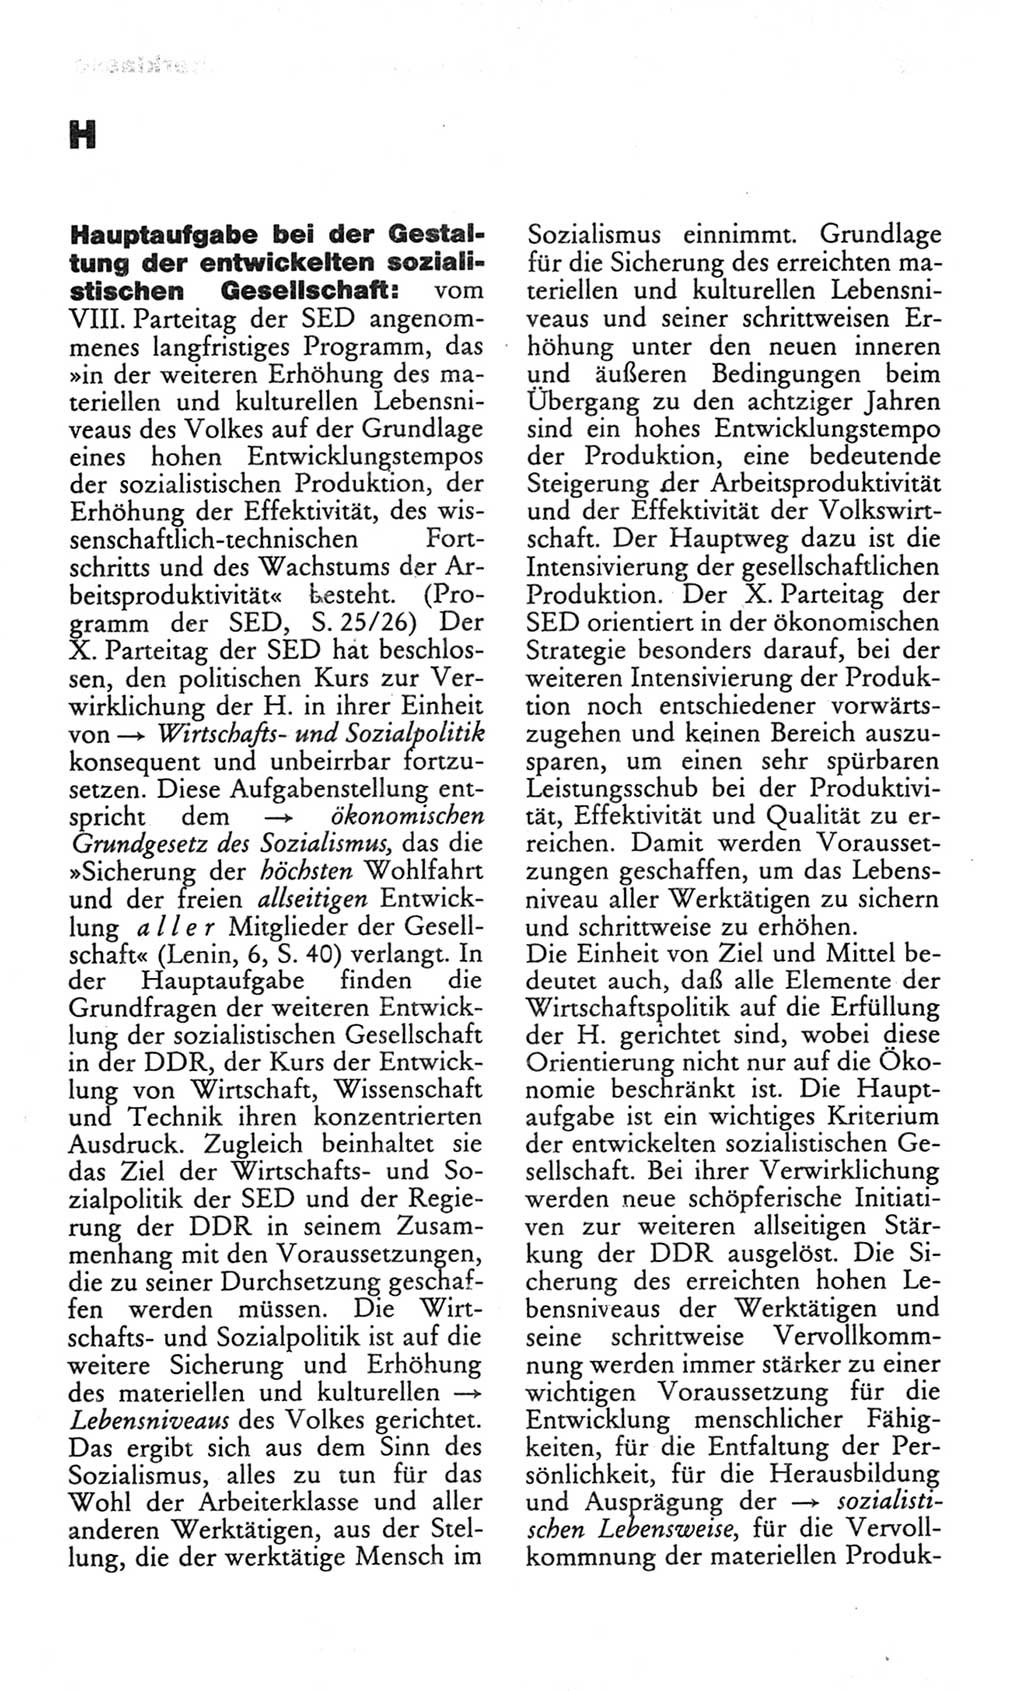 Wörterbuch des wissenschaftlichen Kommunismus [Deutsche Demokratische Republik (DDR)] 1982, Seite 152 (Wb. wiss. Komm. DDR 1982, S. 152)